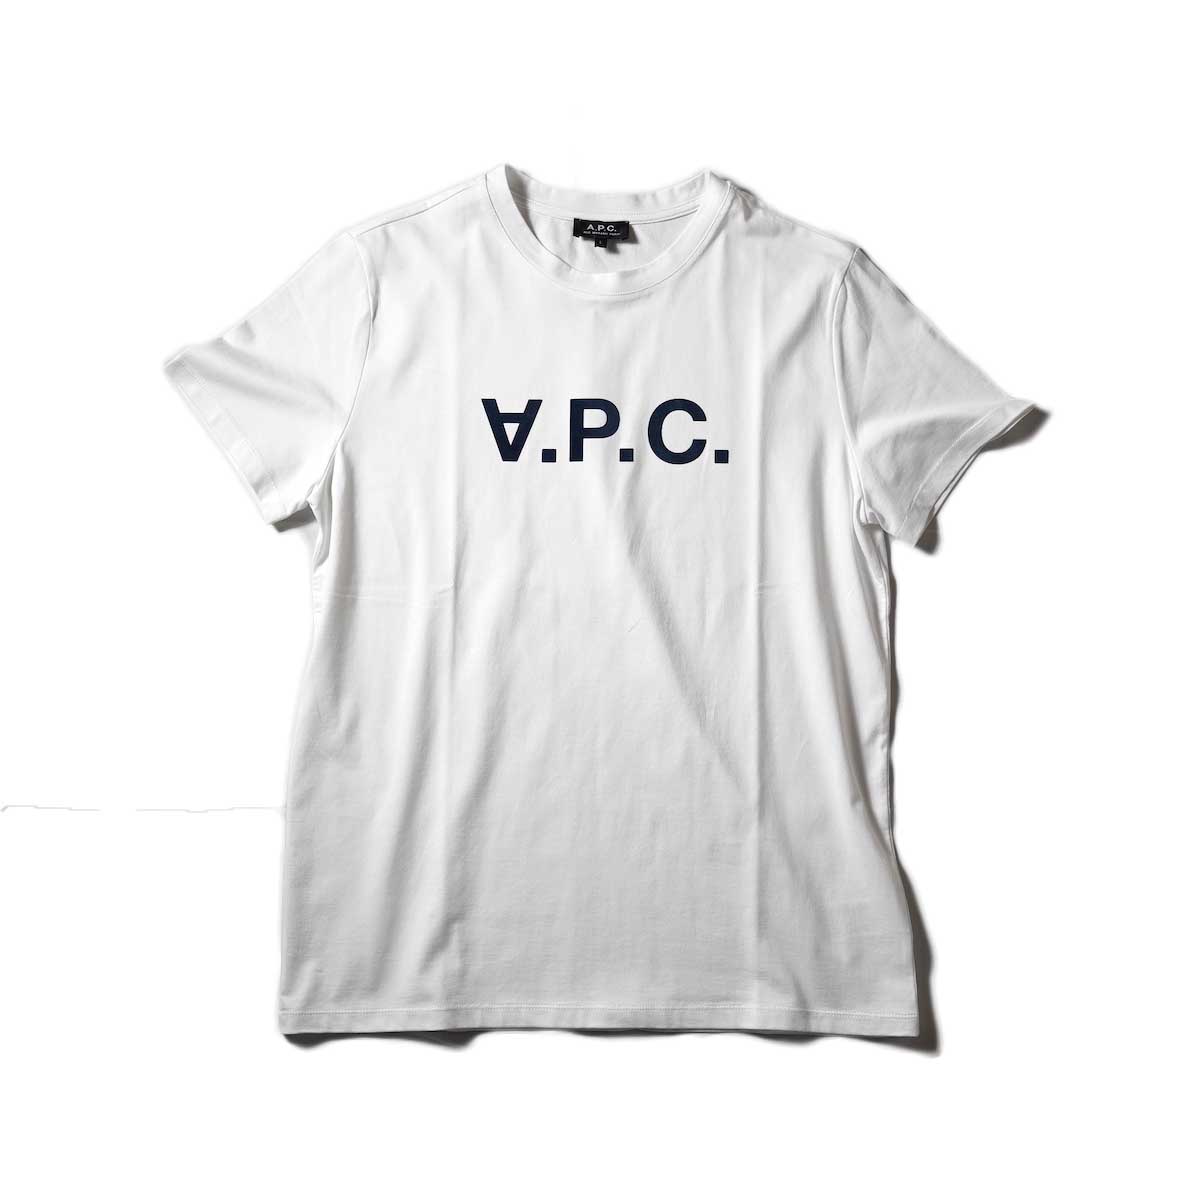 A.P.C. / VPC カラーTシャツ (White)